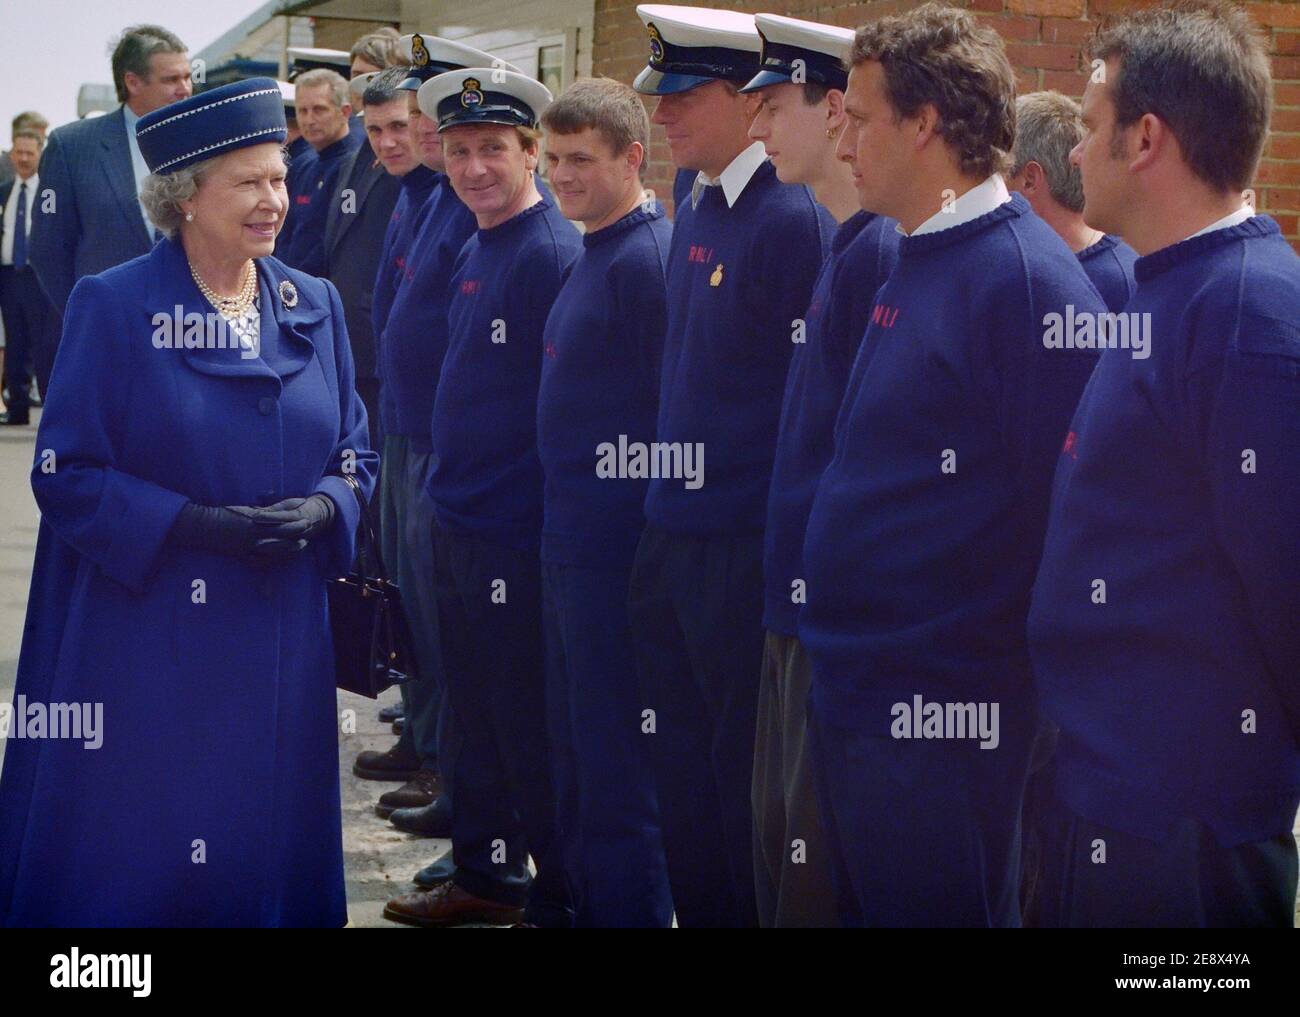 Königin Elizabeth II. Im Gespräch mit Mitgliedern der RNLI-Rettungsschwimmer bei einem Besuch in der Altstadt von Hastings, East Sussex, England, Großbritannien. 6. Juni 1997 Stockfoto